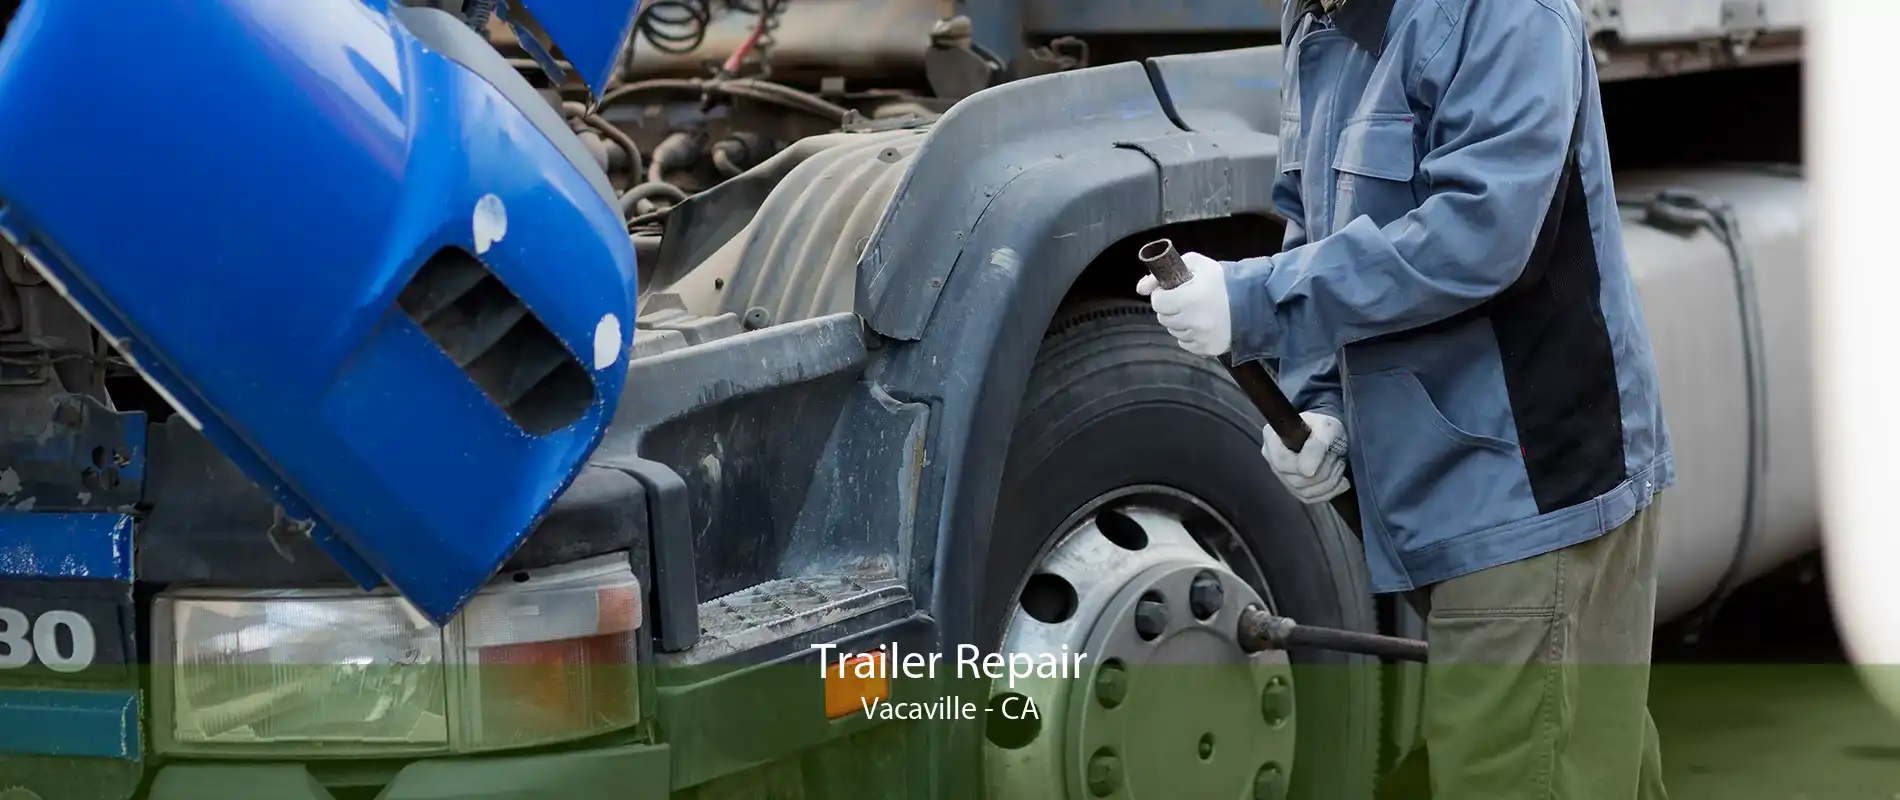 Trailer Repair Vacaville - CA